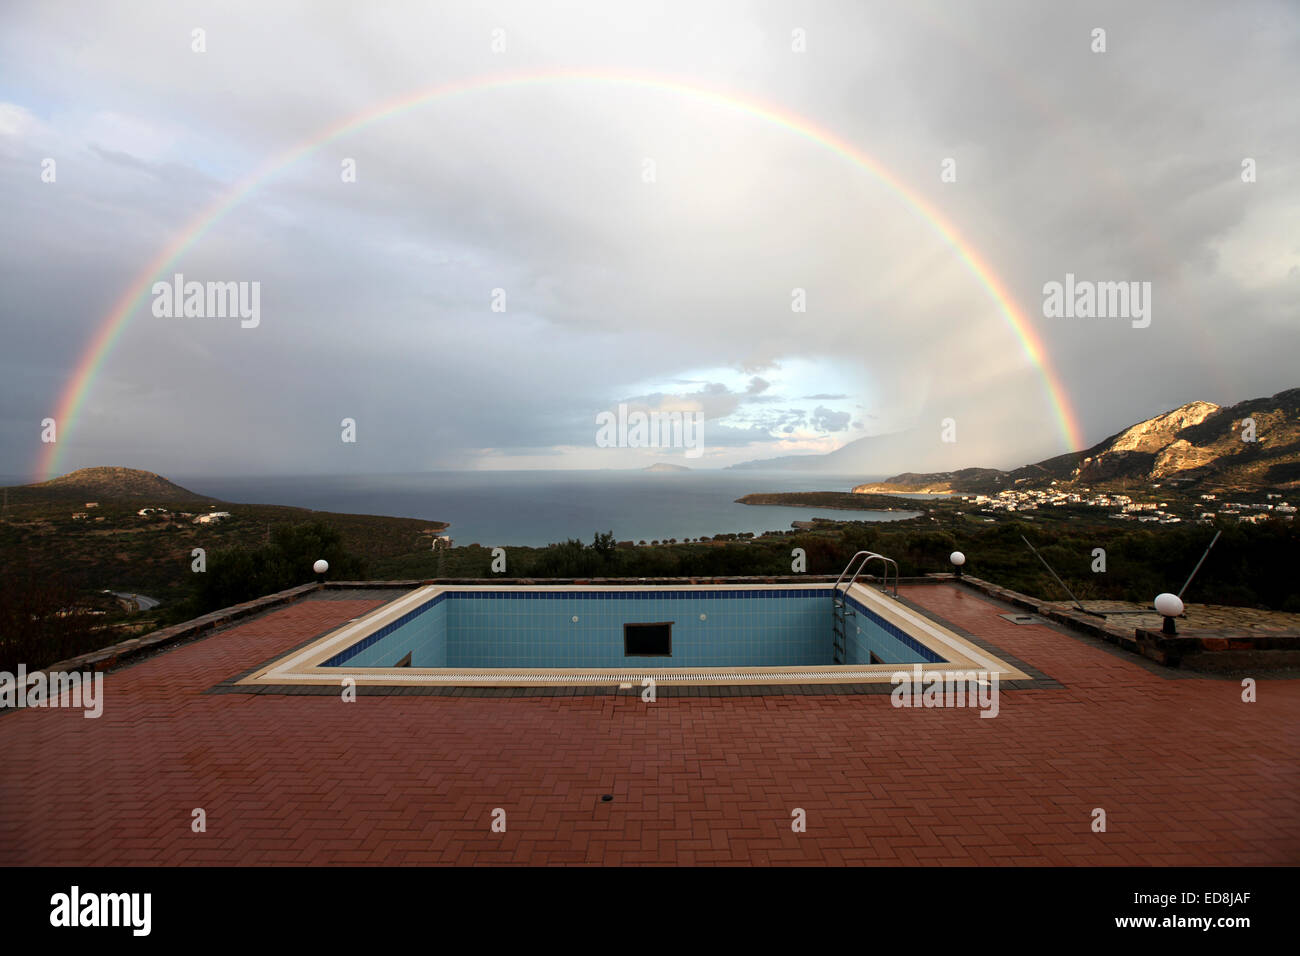 Ein Regenbogen über dem Schwimmbecken mit der Bucht von Mirabello, Crete als Kulisse Stockfoto